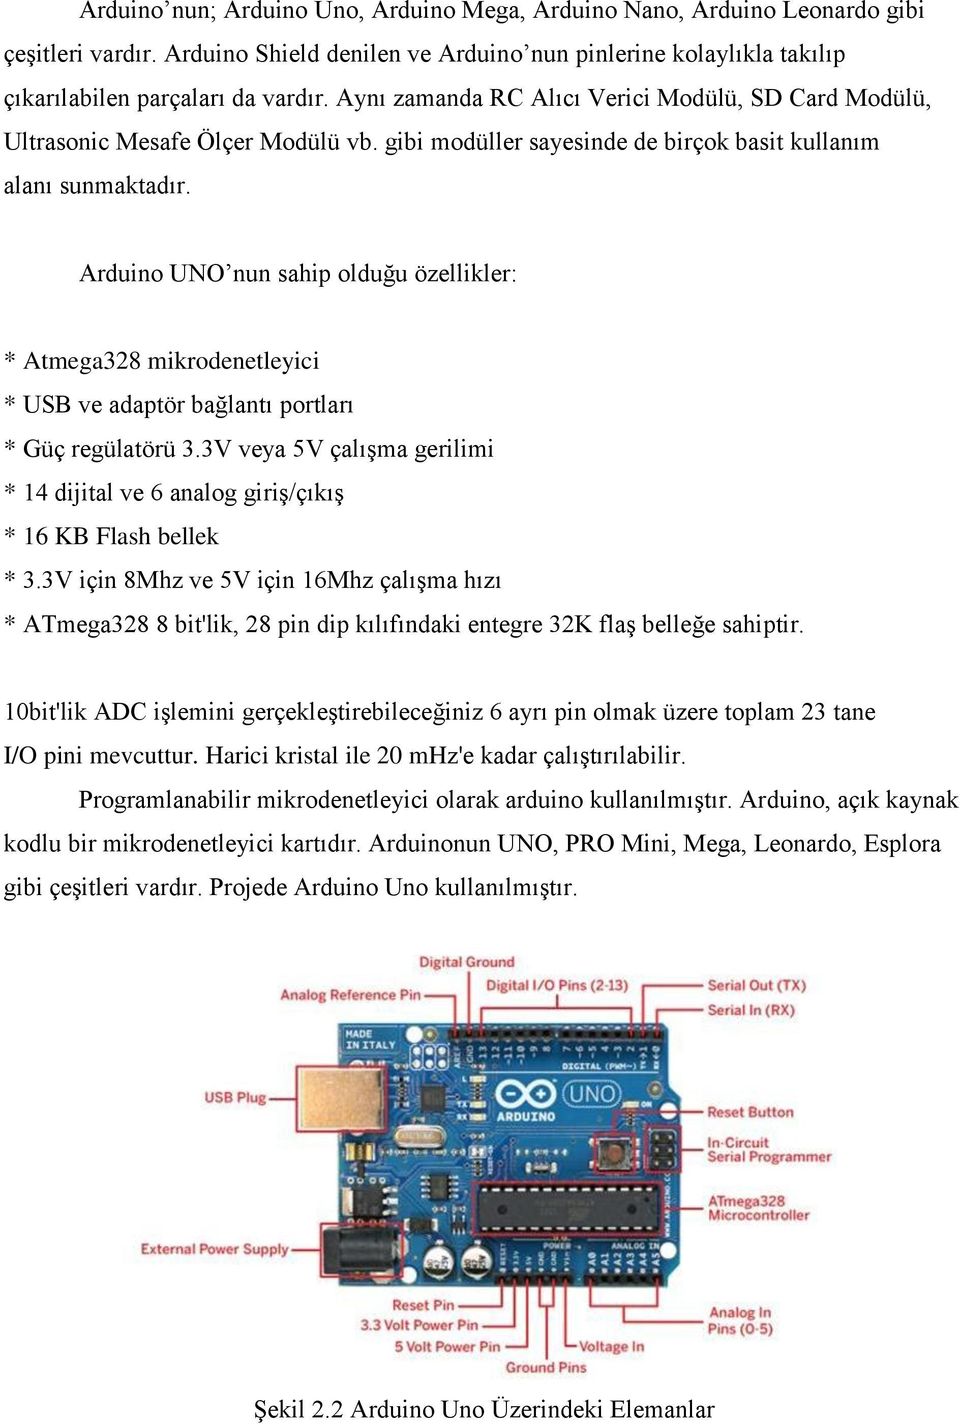 Arduino UNO nun sahip olduğu özellikler: * Atmega328 mikrodenetleyici * USB ve adaptör bağlantı portları * Güç regülatörü 3.